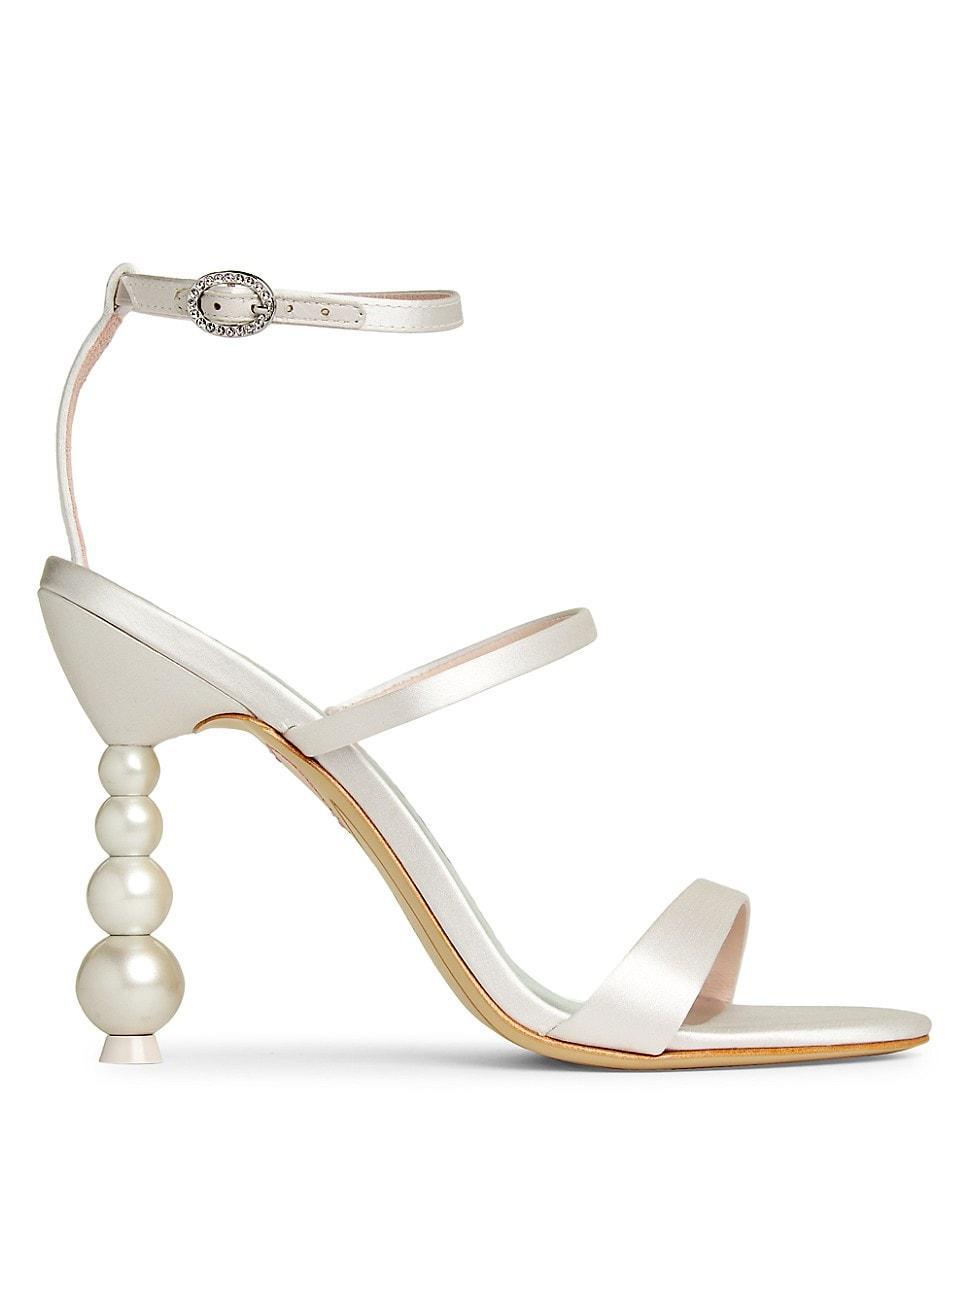 Sophia Webster Rosalind Pearl Satin Sandal Product Image